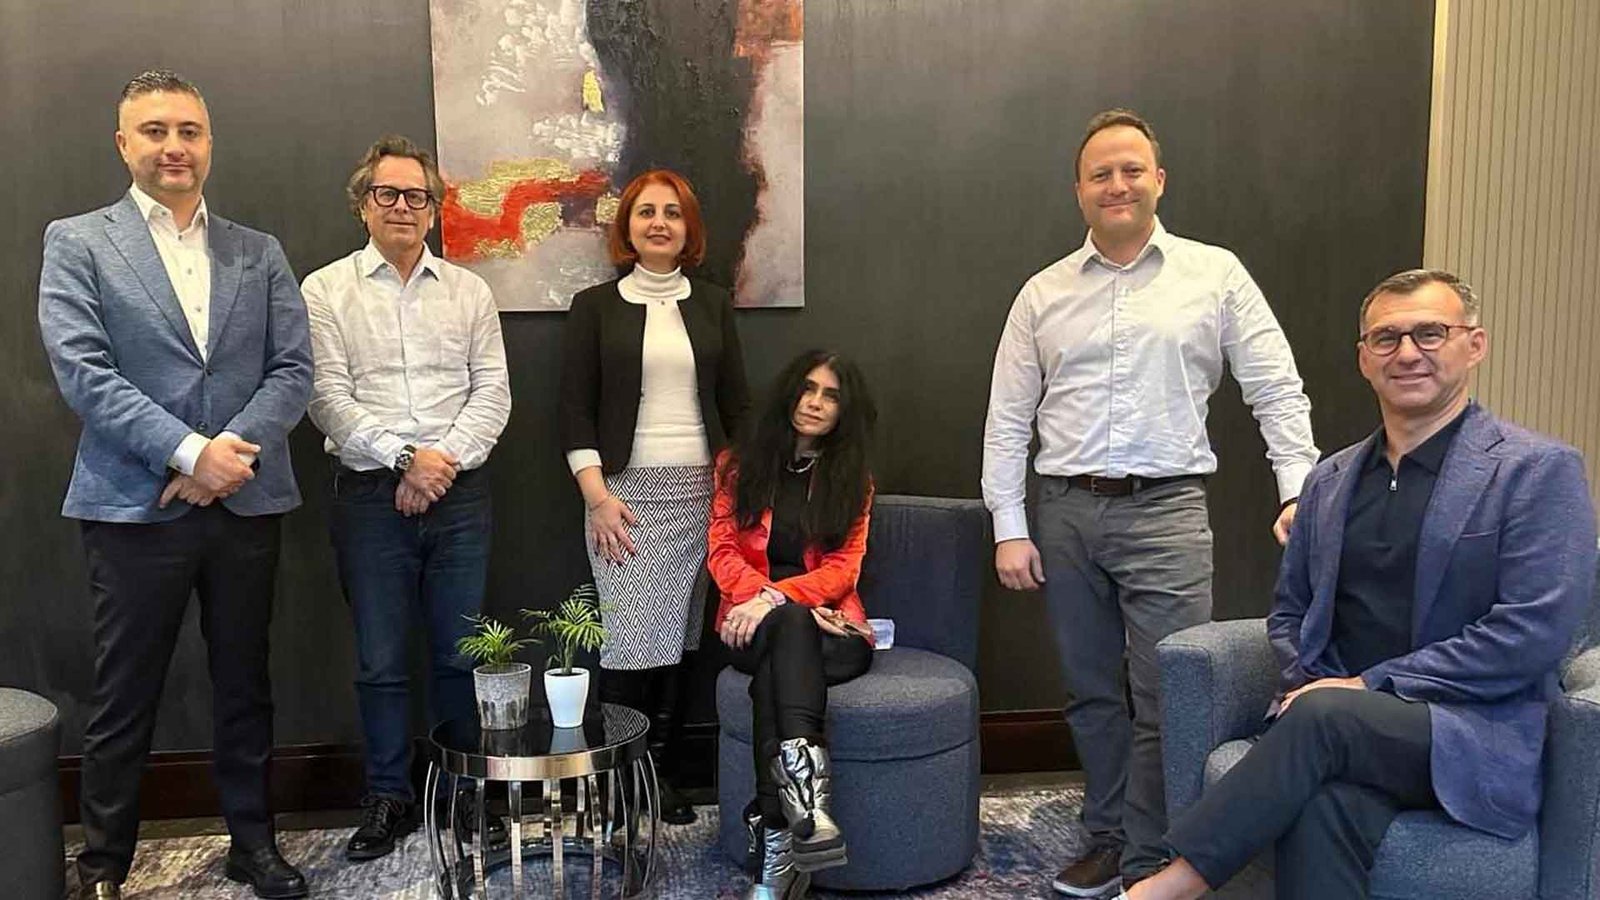 Çiğdem Yorgancıoğlu Chi Ci Talks Yatırım, Göçmenlik Ve Gayrimenkul Sempozyumunda Kanada'nın Keşfi Delta Marriott Hotel'de